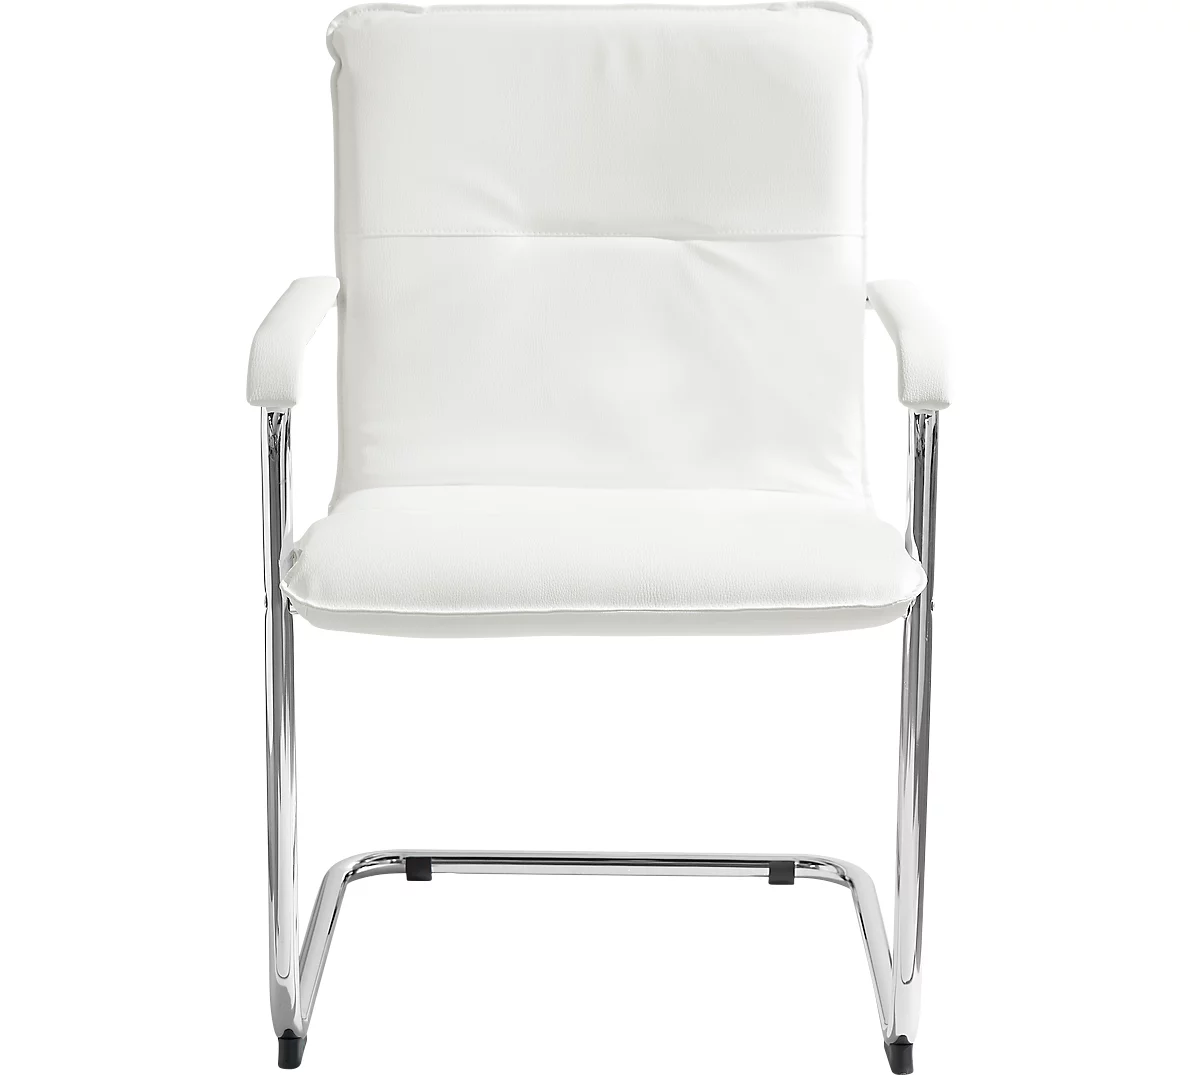 Juego económico de sillón basculante Rumba, revestimiento de polipiel blanco, dimensiones del asiento An. 490 x Pr. 430 x Al. 470 mm, 6 piezas + mesa de conferencias, blanca, An. 1600 x Pr. 800 mm